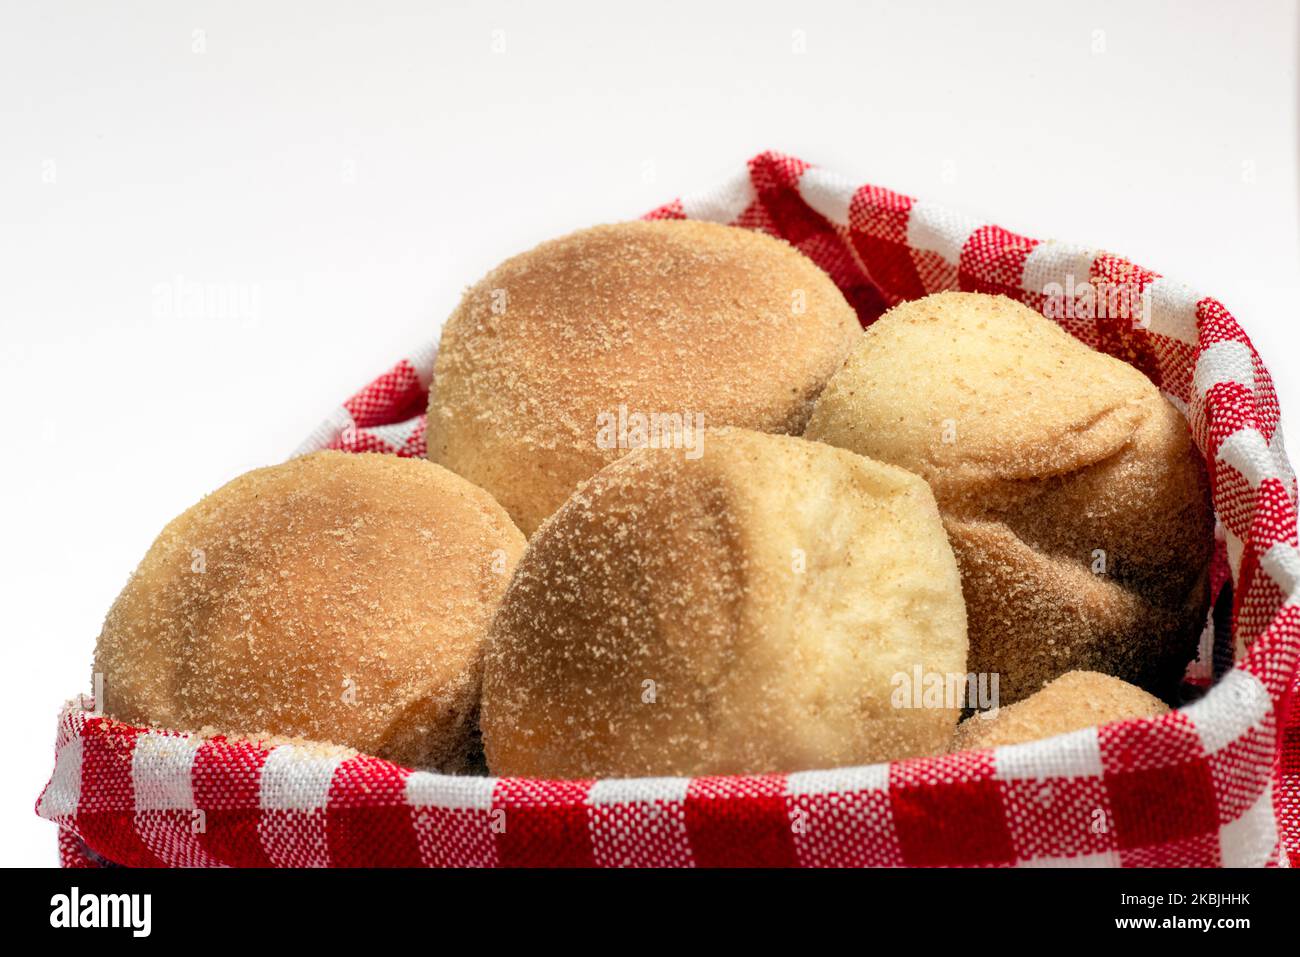 Pandesal o pan de sal es un pan tradicional filipino que normalmente se come durante el desayuno o merienda. Con copyspace para textos Foto de stock